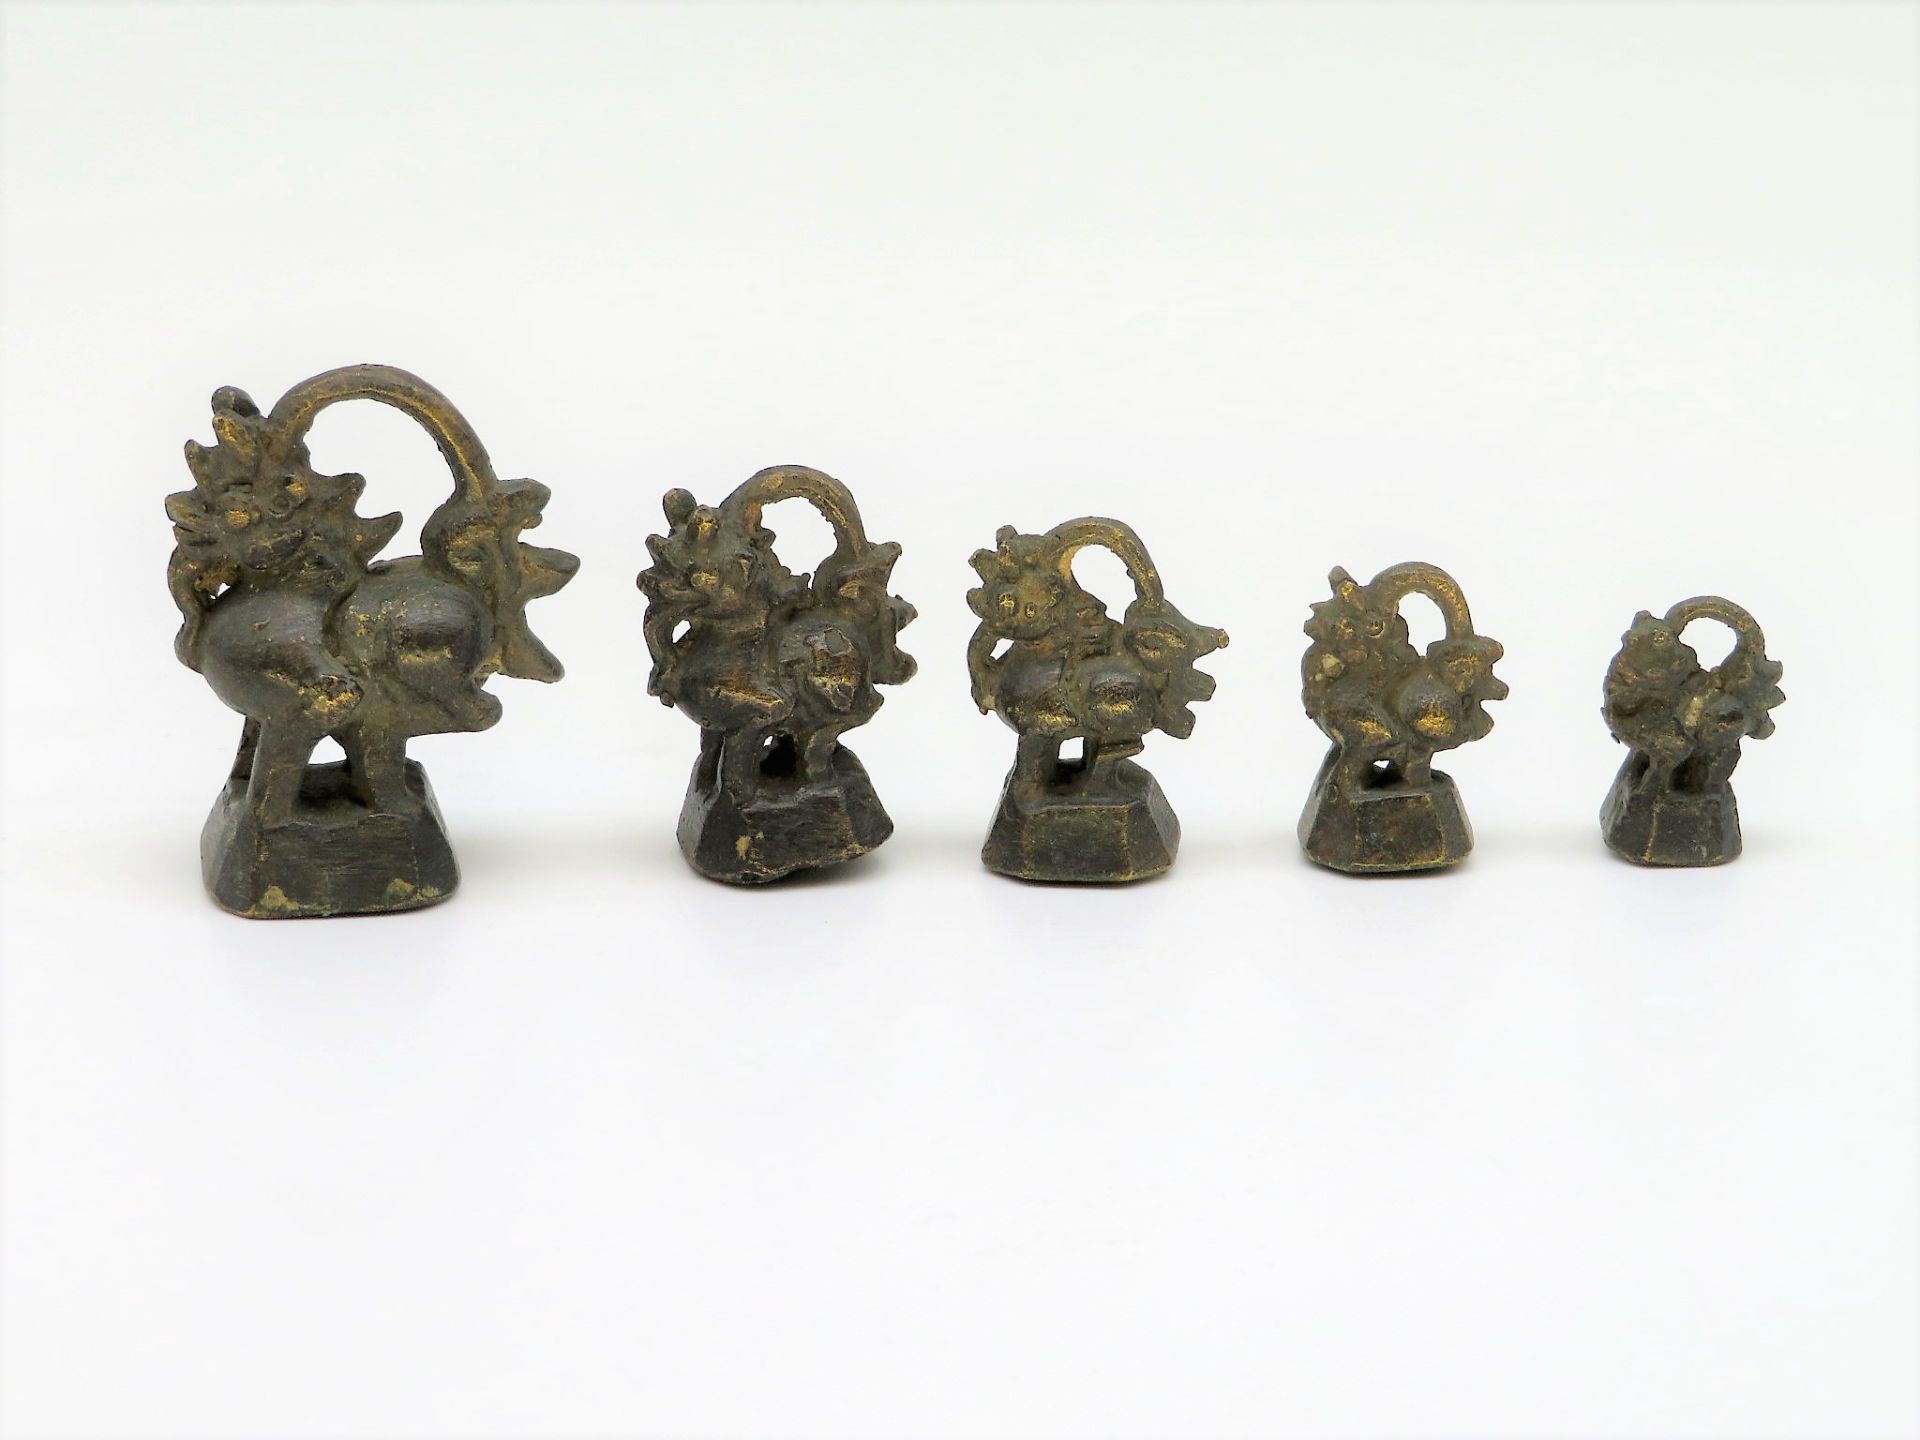 5 Opiumgewichte in Form von Hähnen, Burma, Bronze, diverse Größen, h 2,5 bis 5 cm.